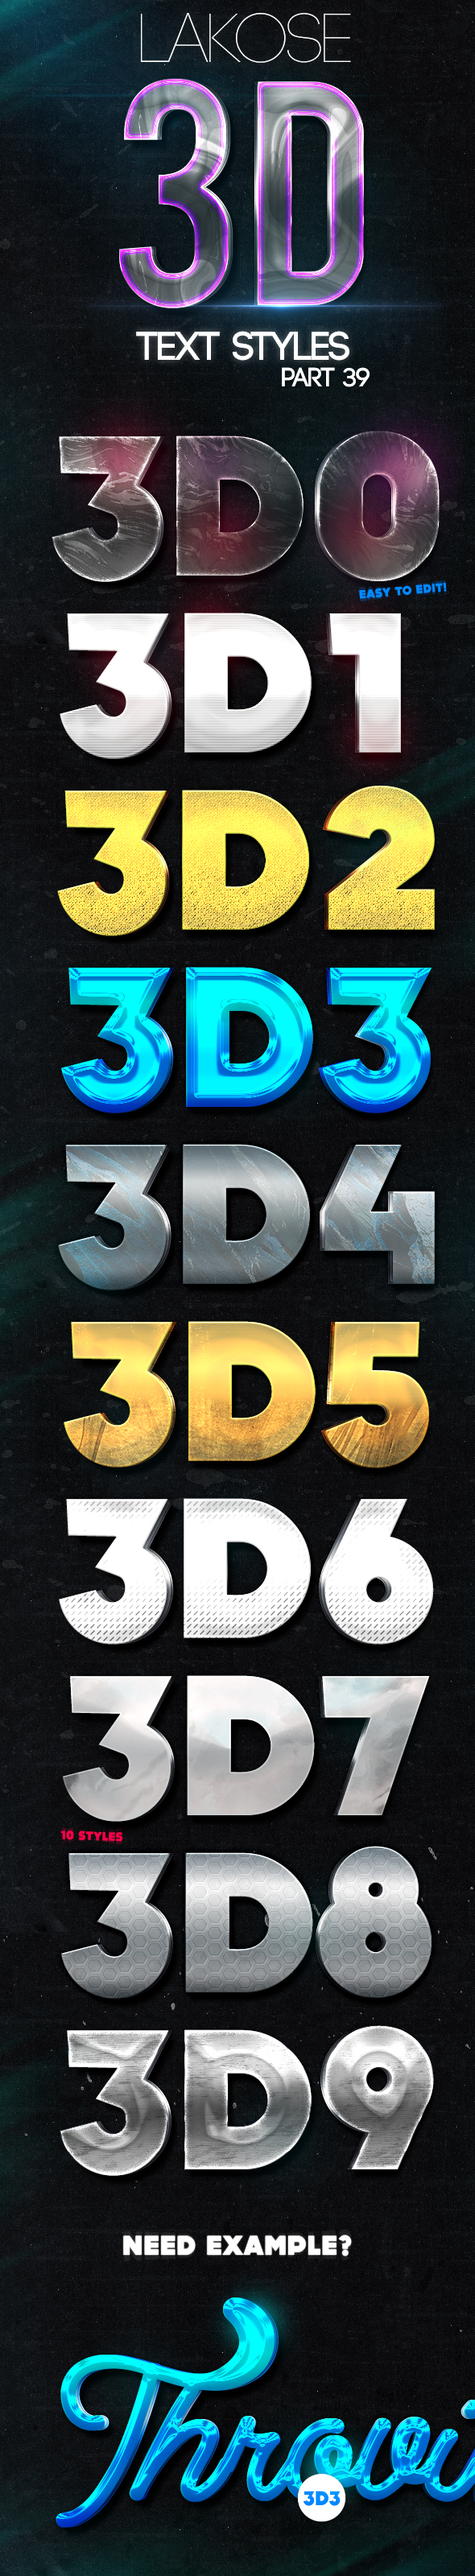 超有金属质感的3D文本样式 Lakose 3D Text Styles Part 39插图